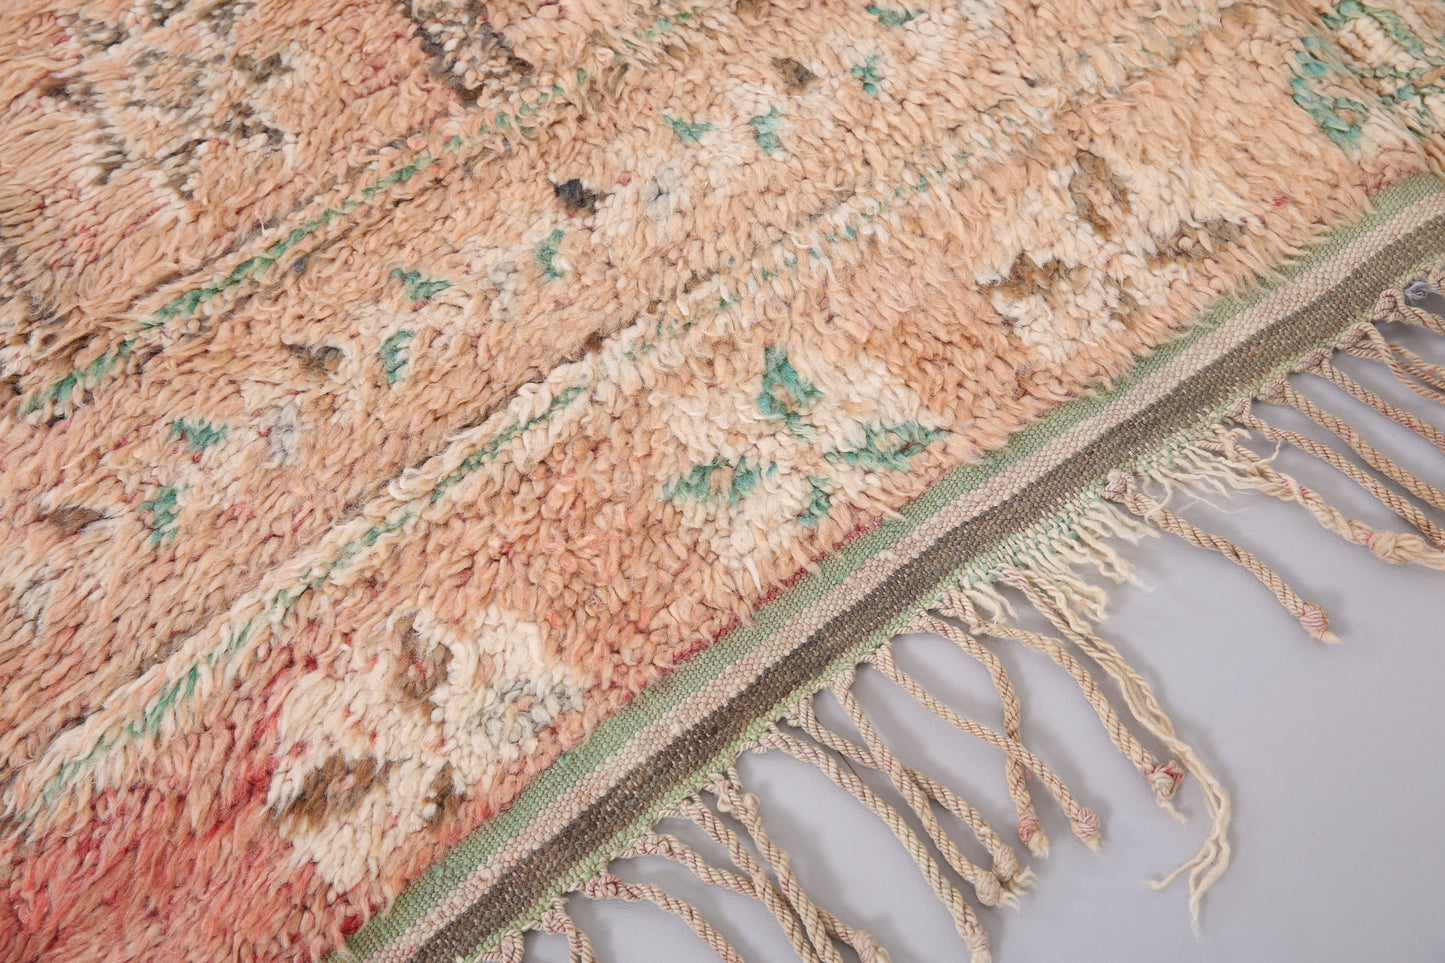 Vintage authentischer marokkanischer Berberteppich 5,5 FT x 7,3 FT - Vintage marokkanischer Teppich - handgemachter Teppich - Berberteppich - alter Boho-Teppich - Einzigartiger Teppich